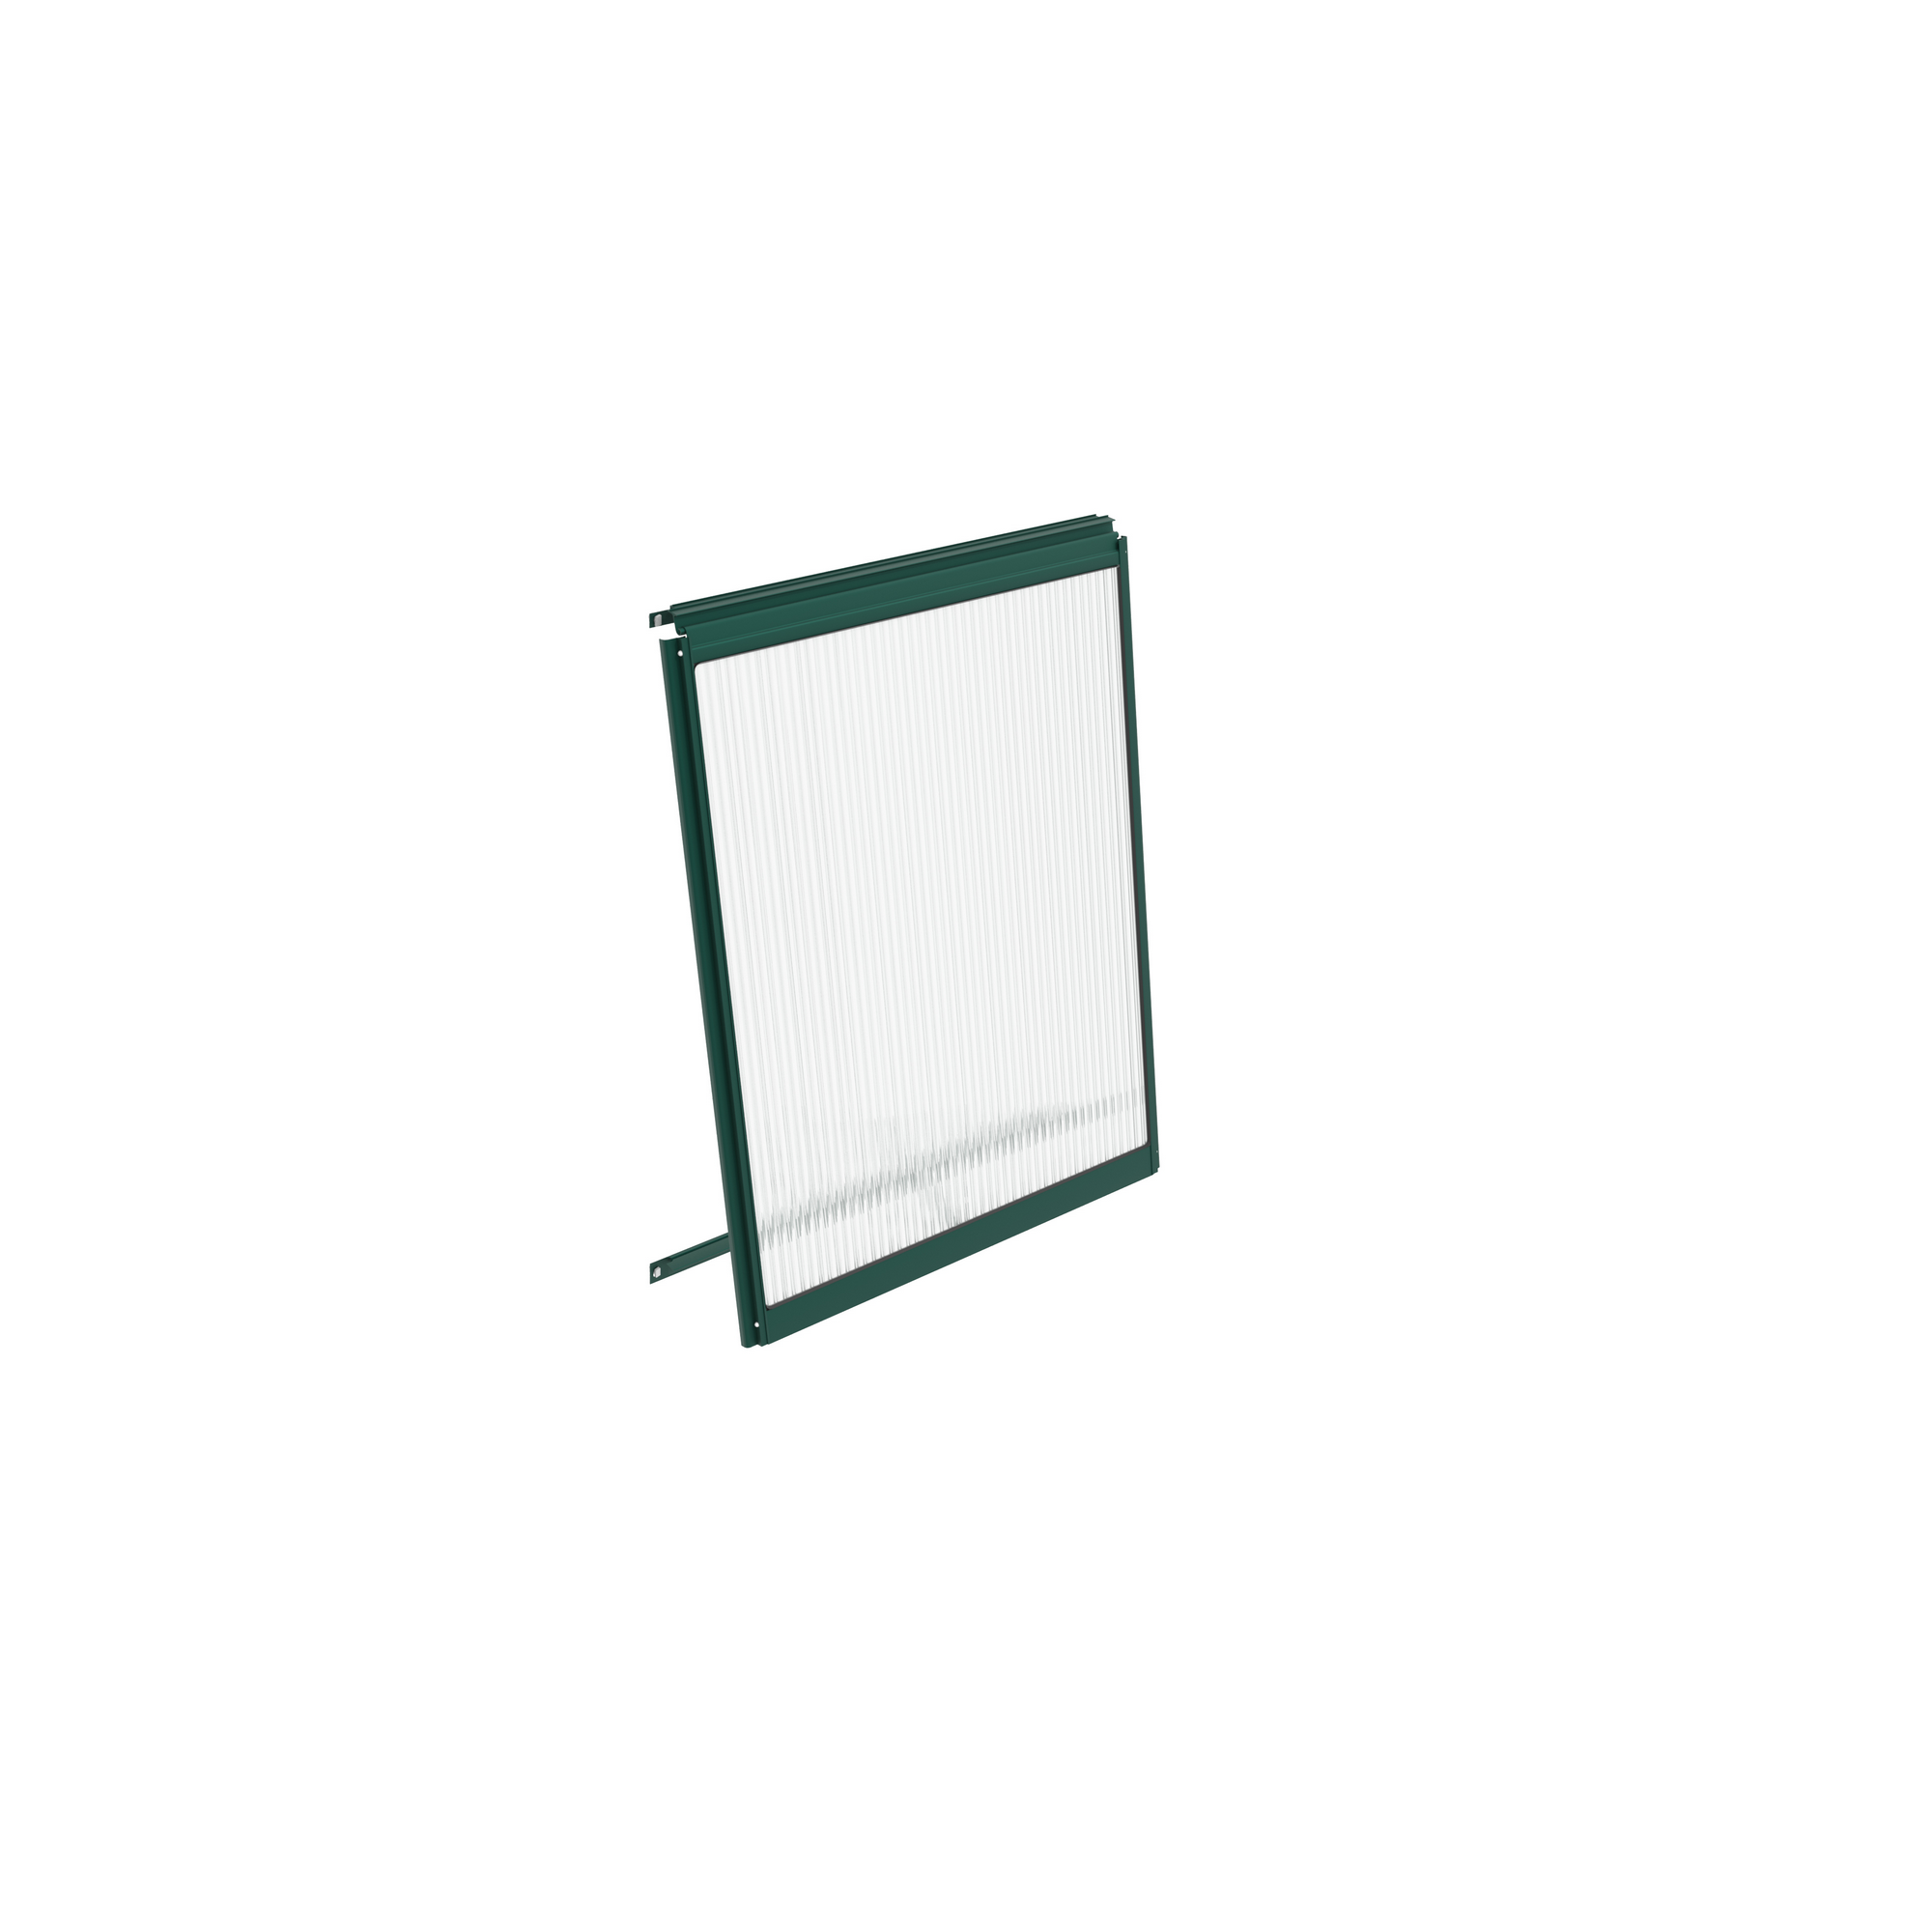 Alu-Seitenfenster 'V' smaragd 59 x 79,2 cm für Gewächshäuser + product picture